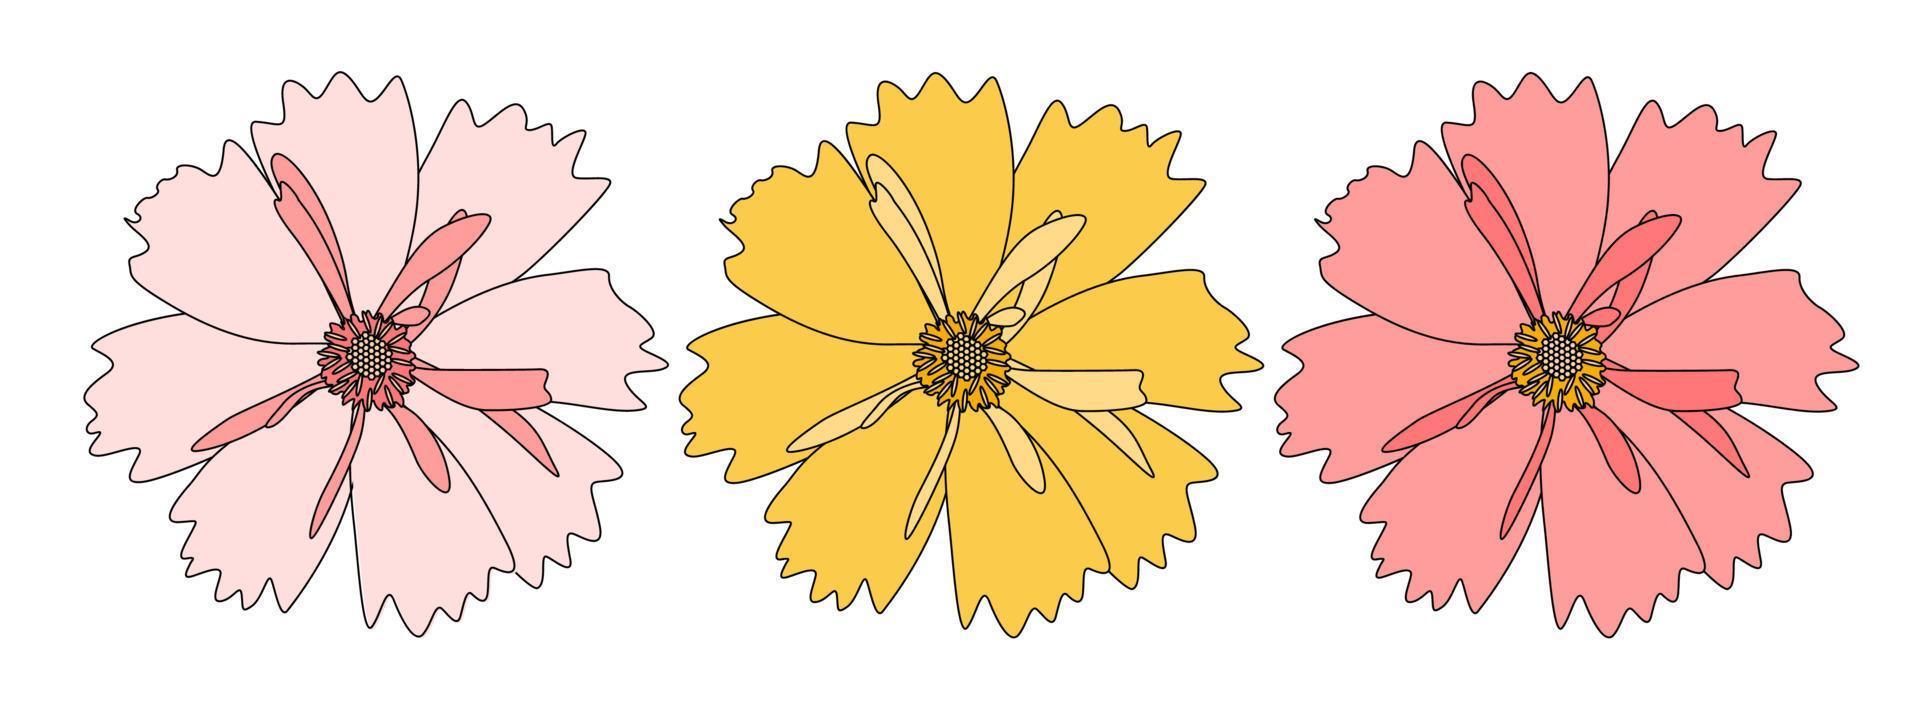 fiore disegnato a mano astratto su priorità bassa bianca. illustrazione vettoriale